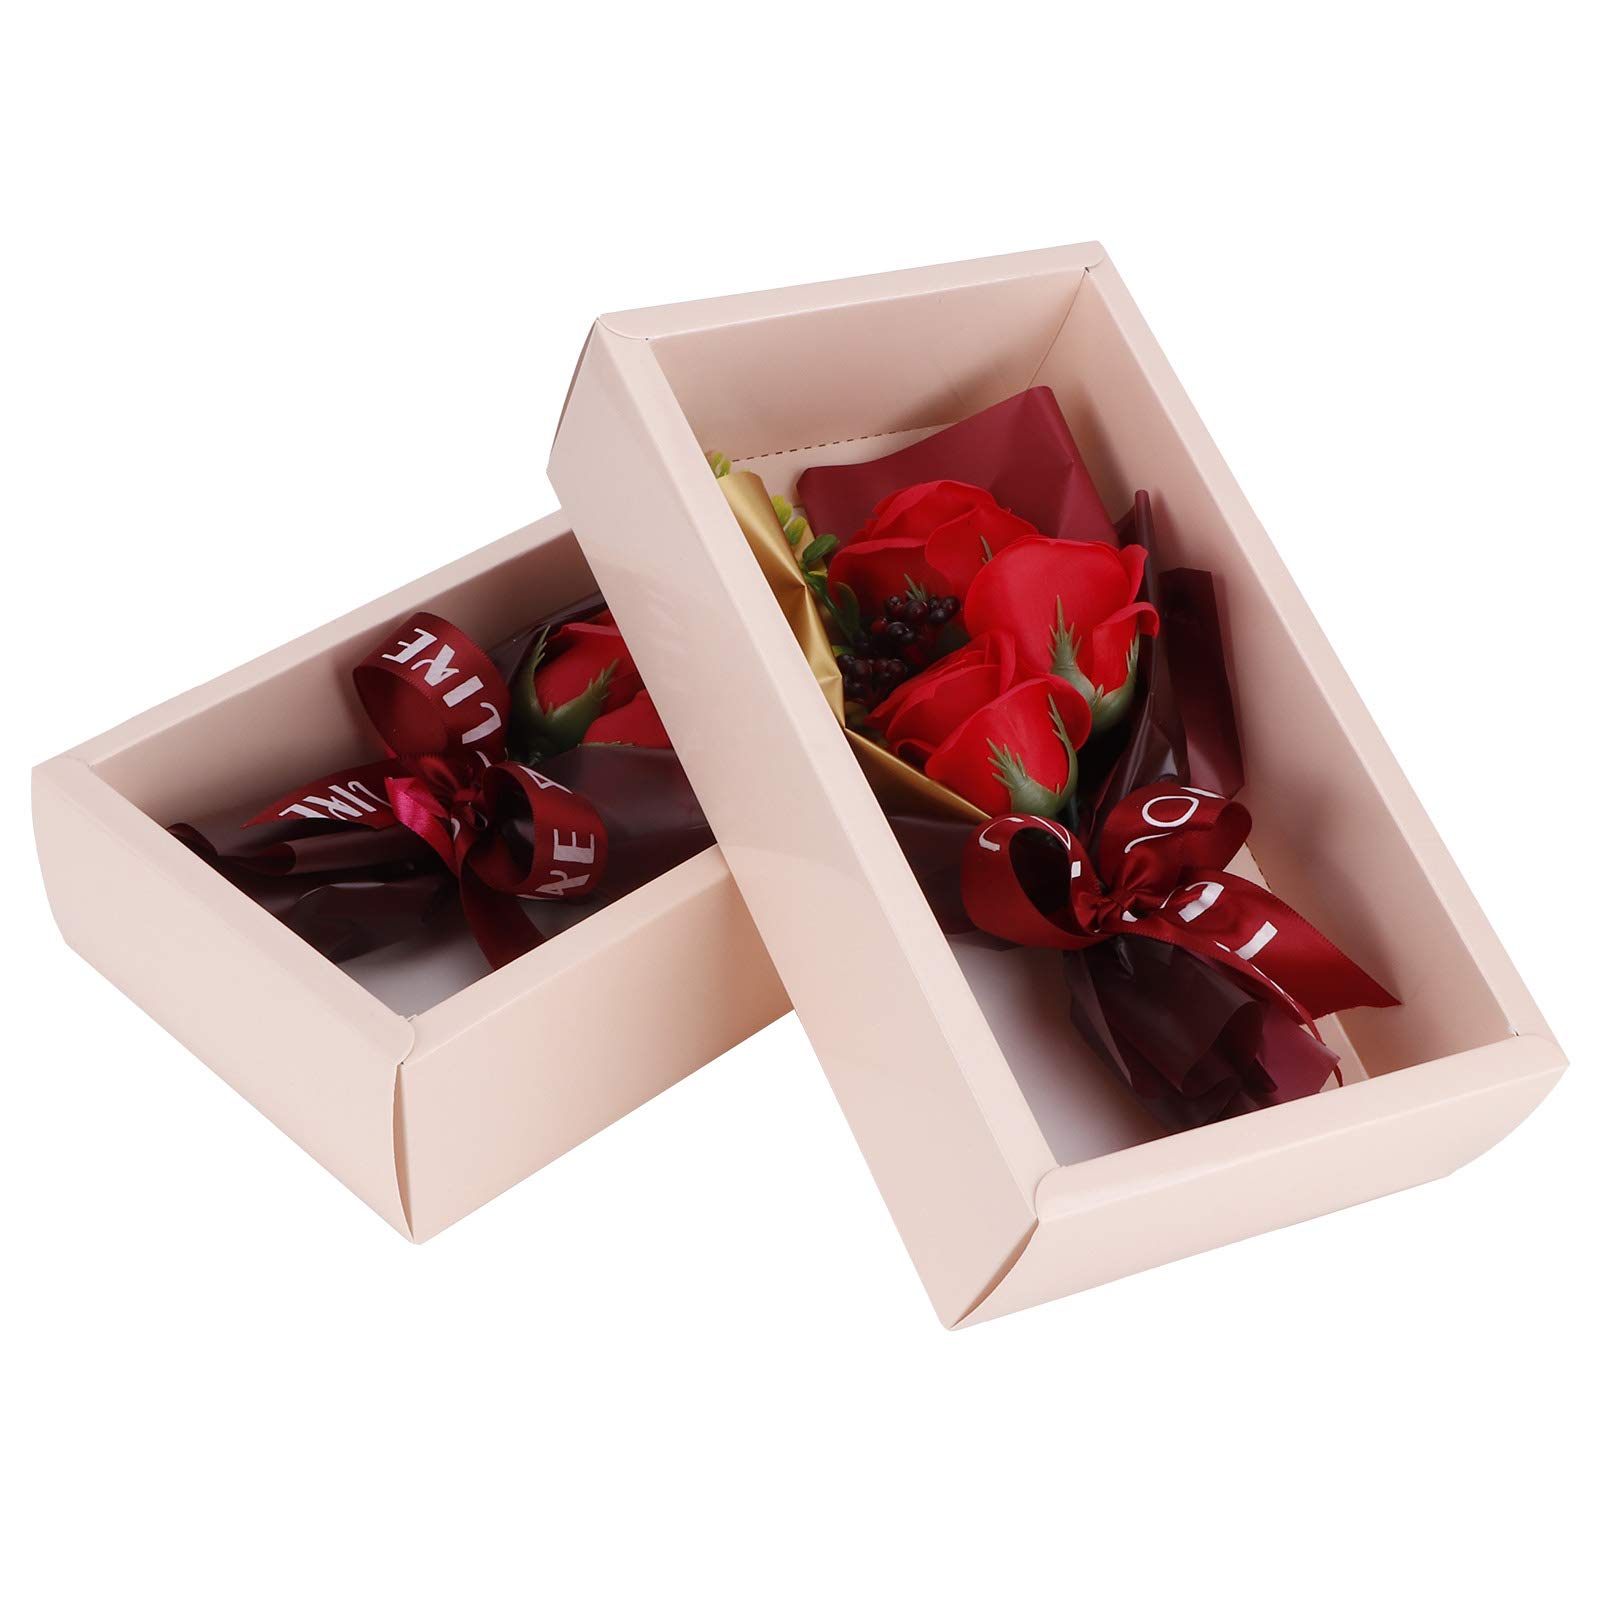 Seifenrosen, 2Set Floral duftende Seifenblumen-Imitation Rosenstrauß für Valentinstag Jubiläumsgeschenke(rot)